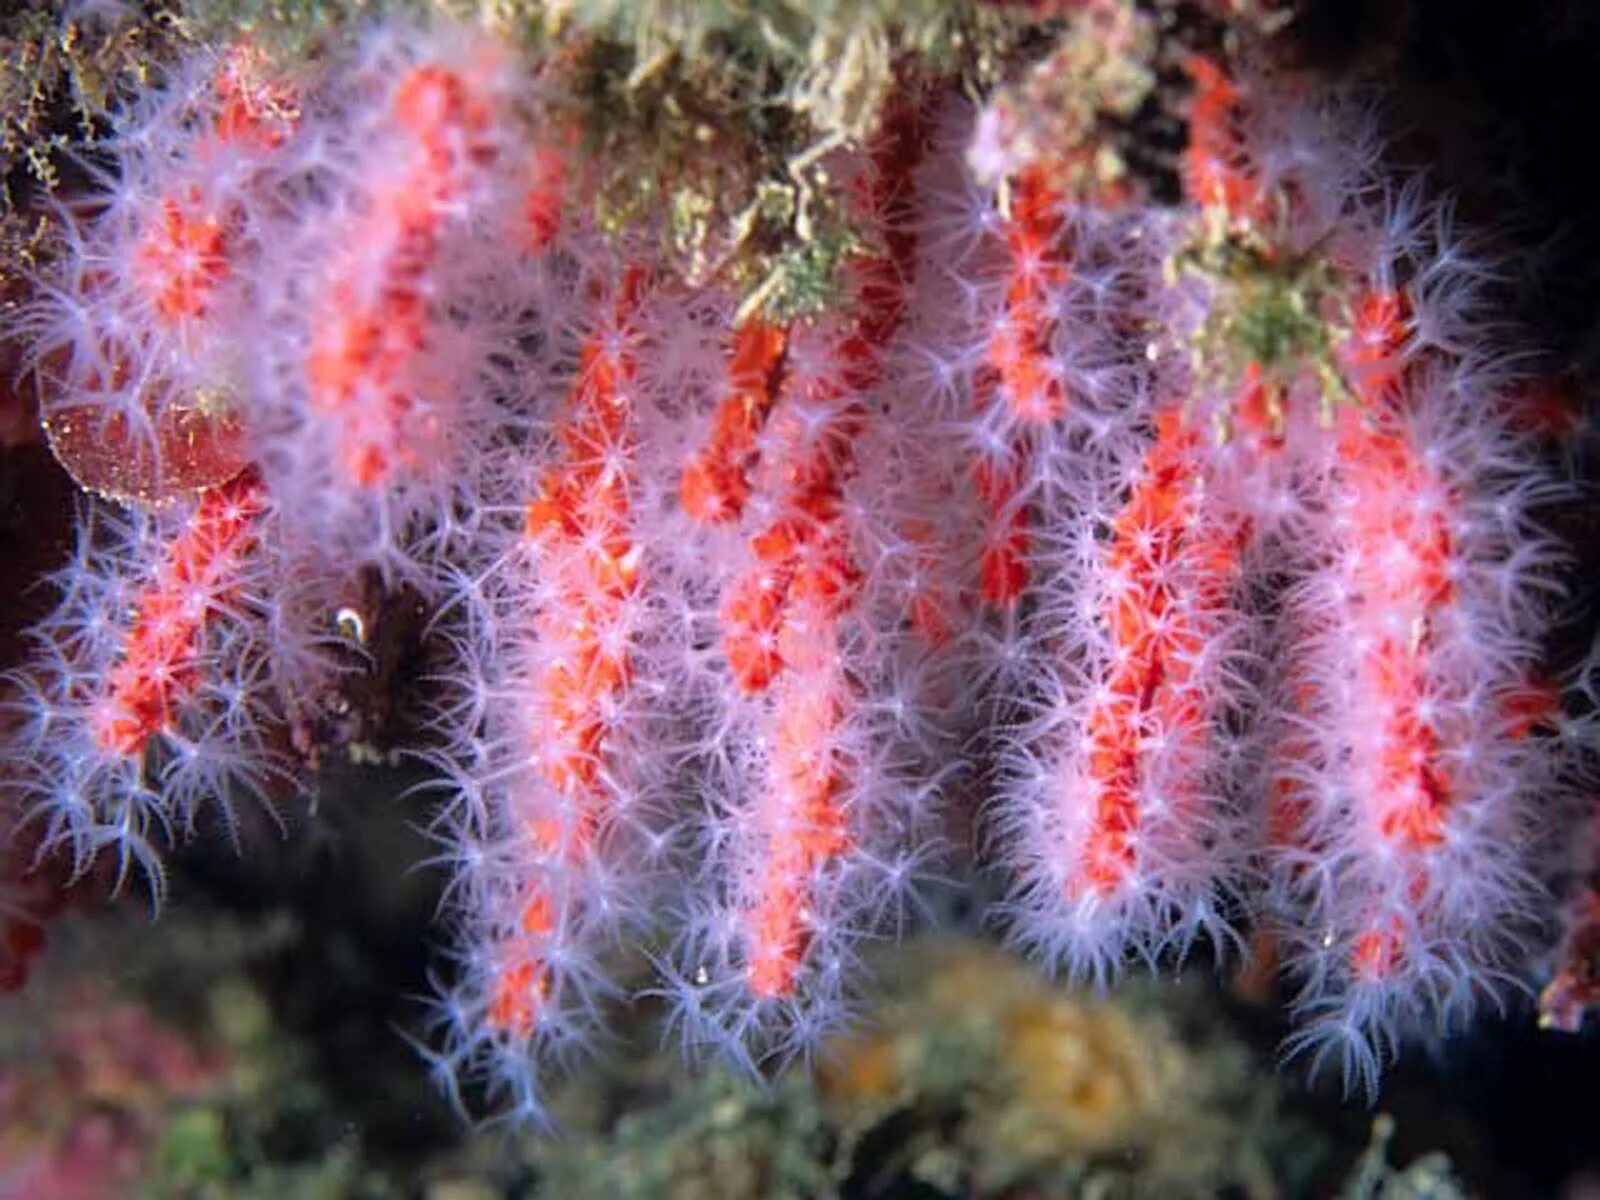 The coral has. Благородный коралл Corallium rubrum. Corallium rubrum (Кораллиум рубрум) коралл красный. Восьмилучевые кораллы Octocorallia. Коралловые полипы альционарии.